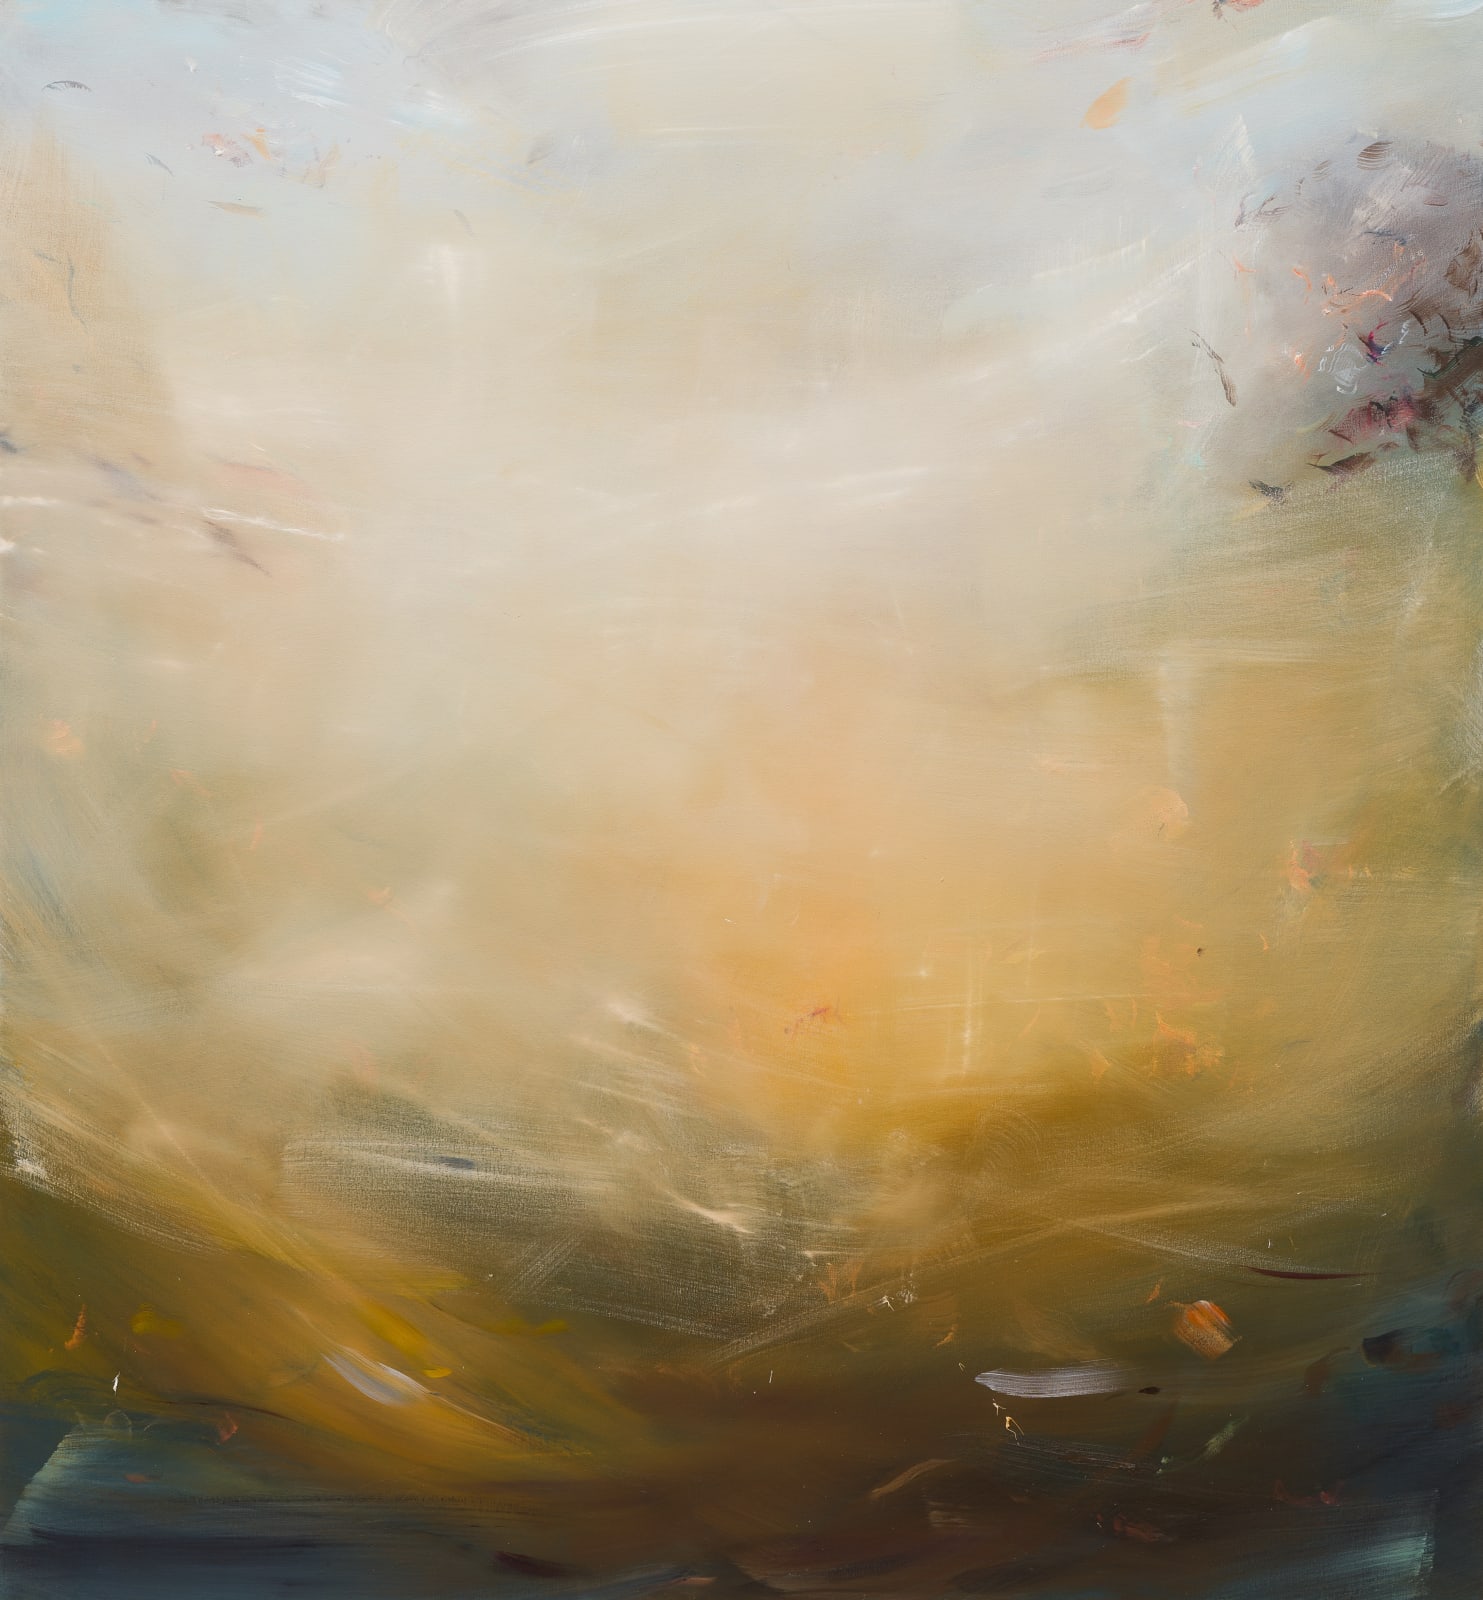 Arricia Sunset oil on canvas 140cm x 130cm